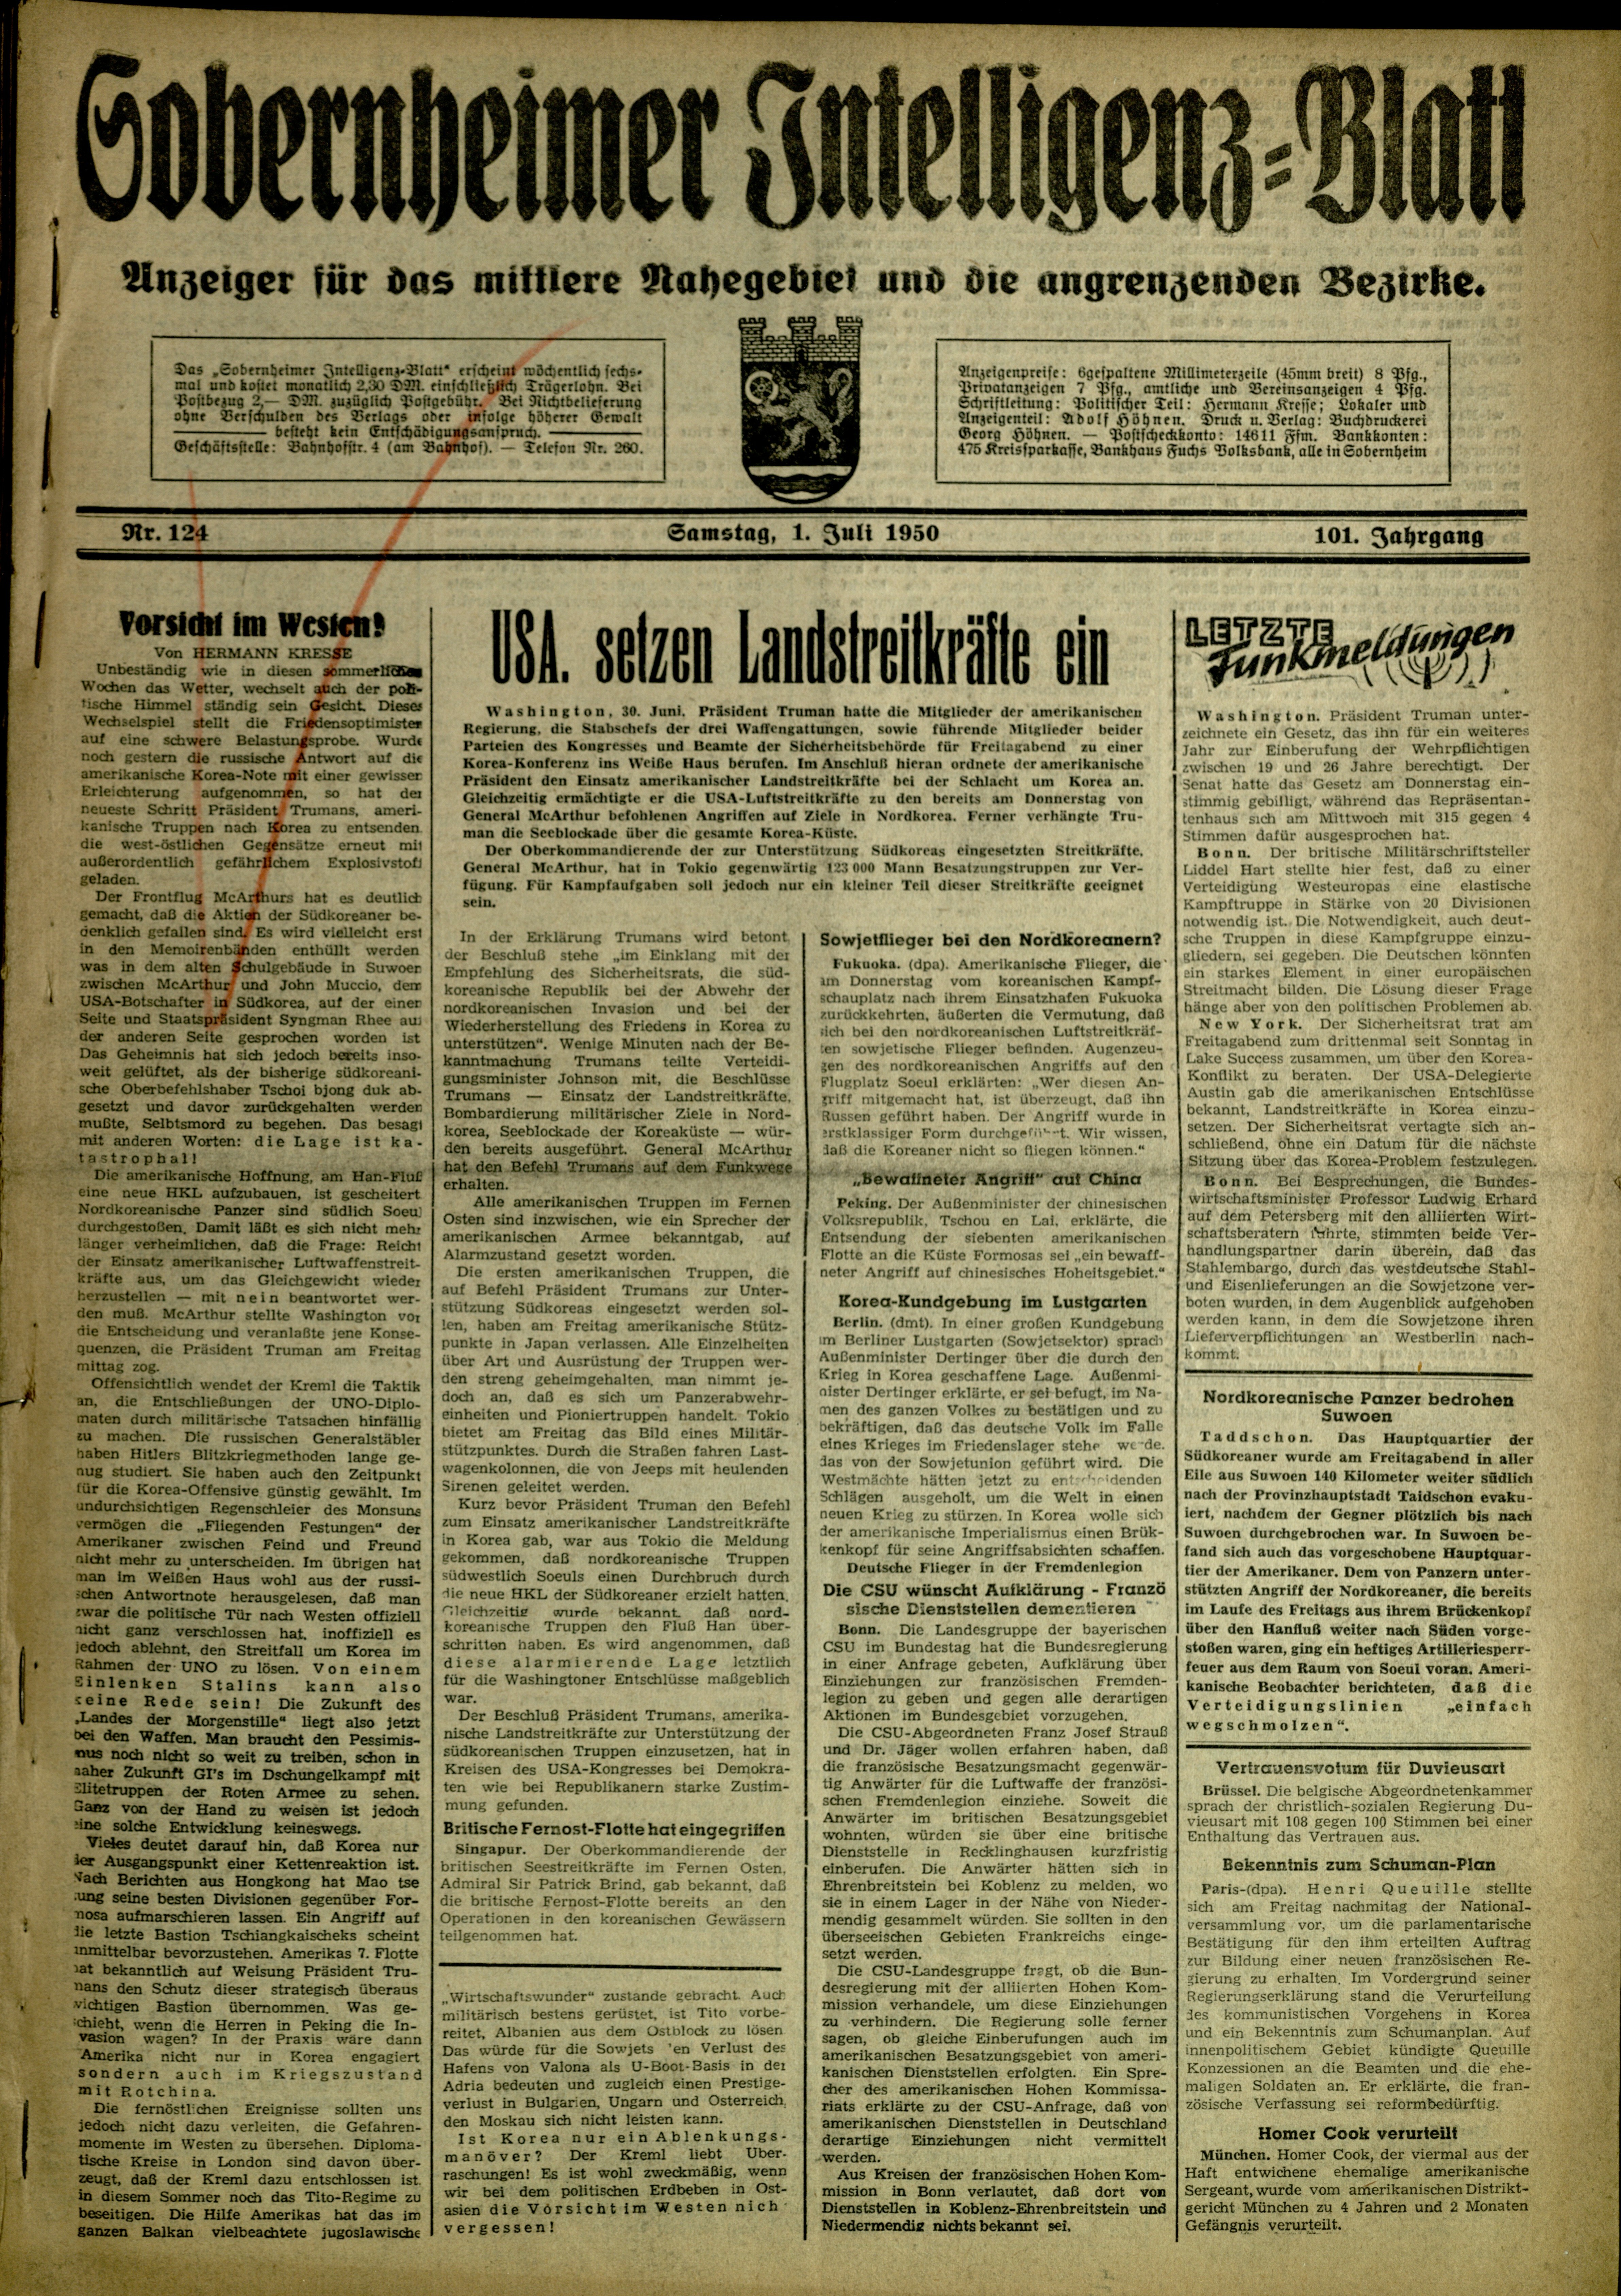 Zeitung: Sobernheimer Intelligenzblatt; Juli 1950, Jg. 82 Nr. 124 (Heimatmuseum Bad Sobernheim CC BY-NC-SA)